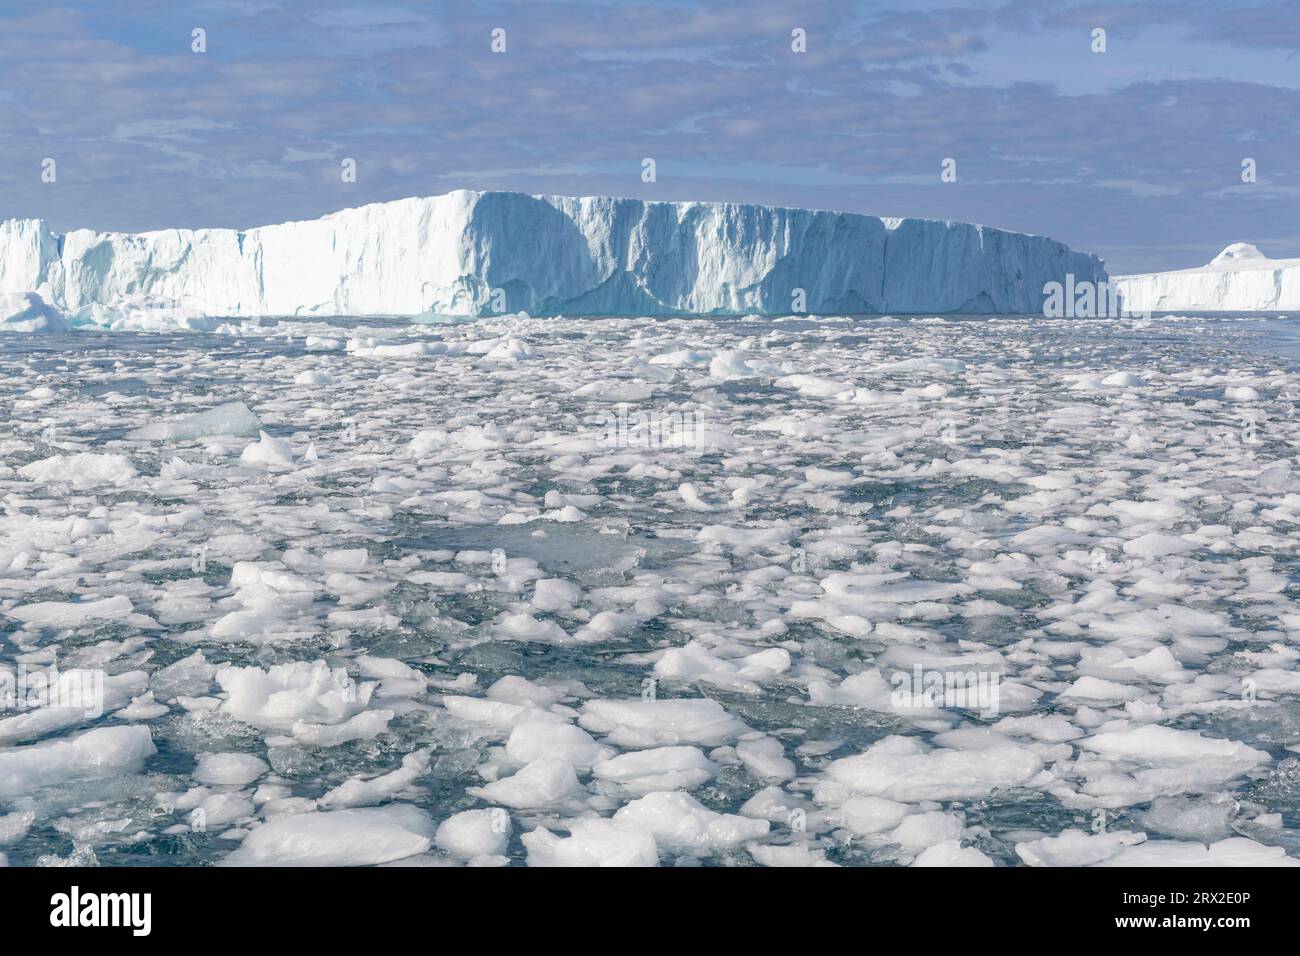 D'énormes icebergs de l'Icefjorsat voisin ont plongé dans la moraine terminale près d'Ilulissat, dans l'ouest du Groenland, dans les régions polaires Banque D'Images